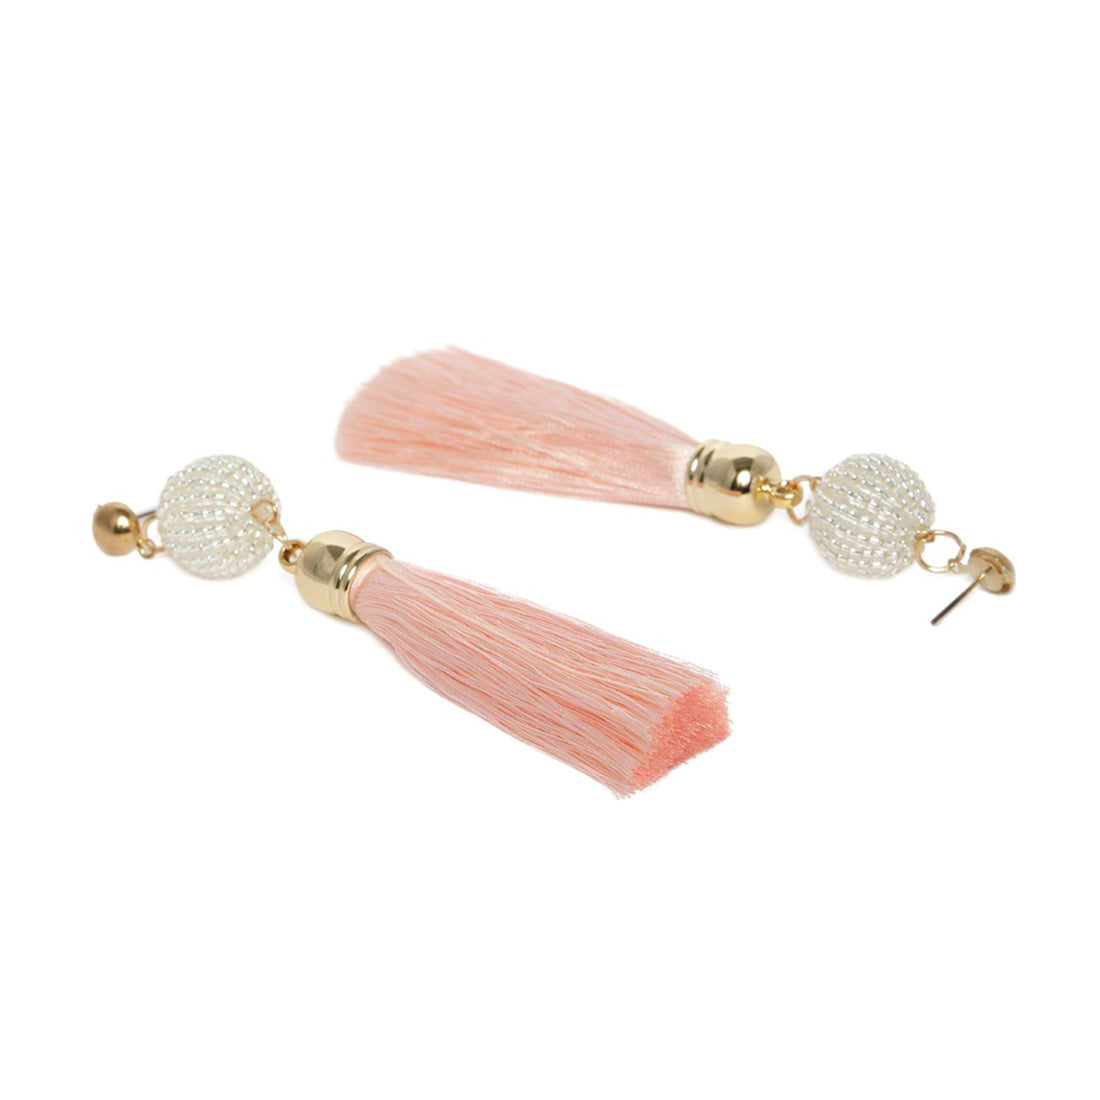 Set of 2 Red & Pink Tassel Drop Earrings